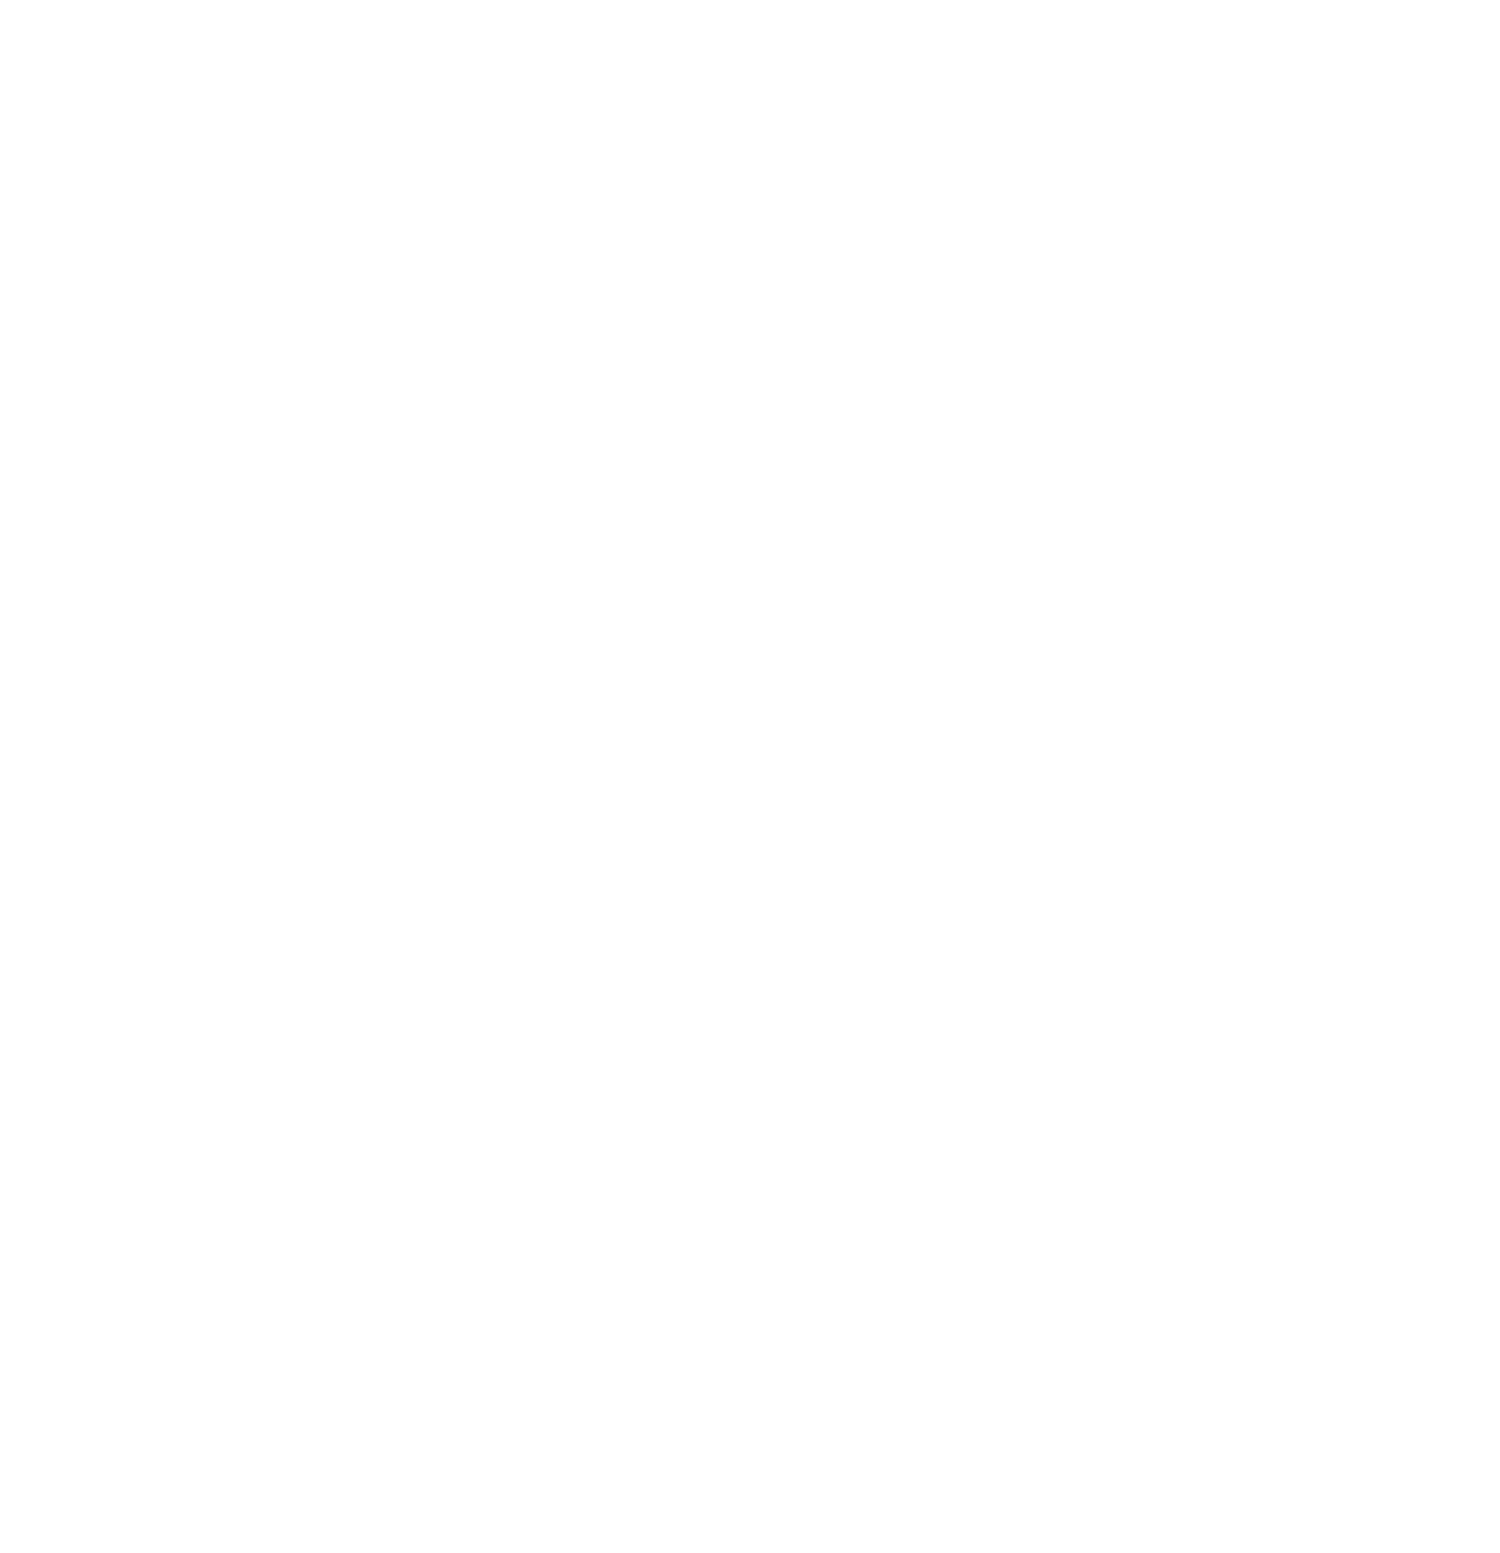 MYSTERY SONATA